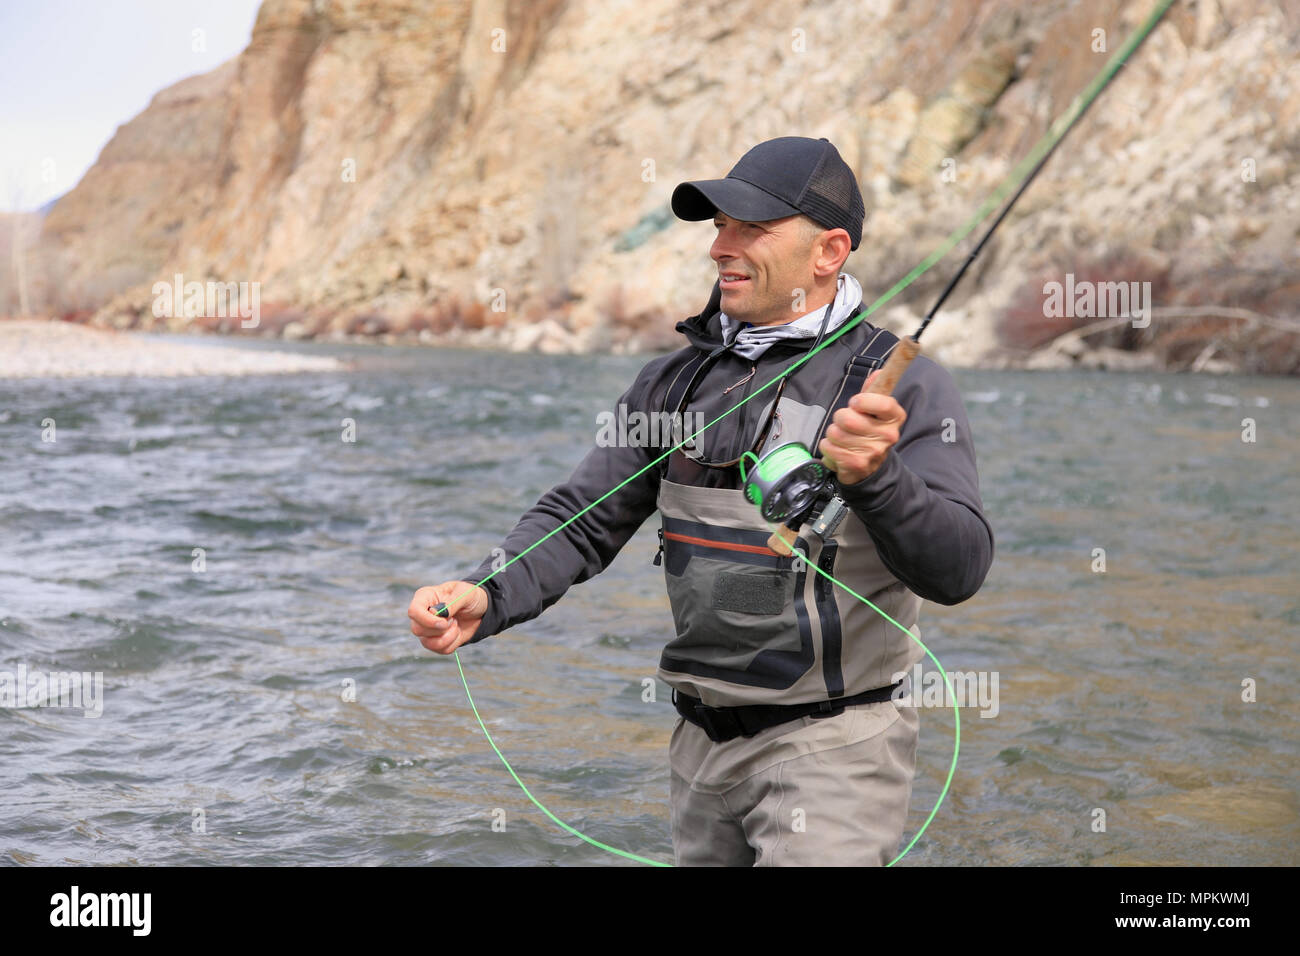 pêcheur adulte de sexe masculin qui se coud à gué et jette une tige de mouche une rivière Banque D'Images